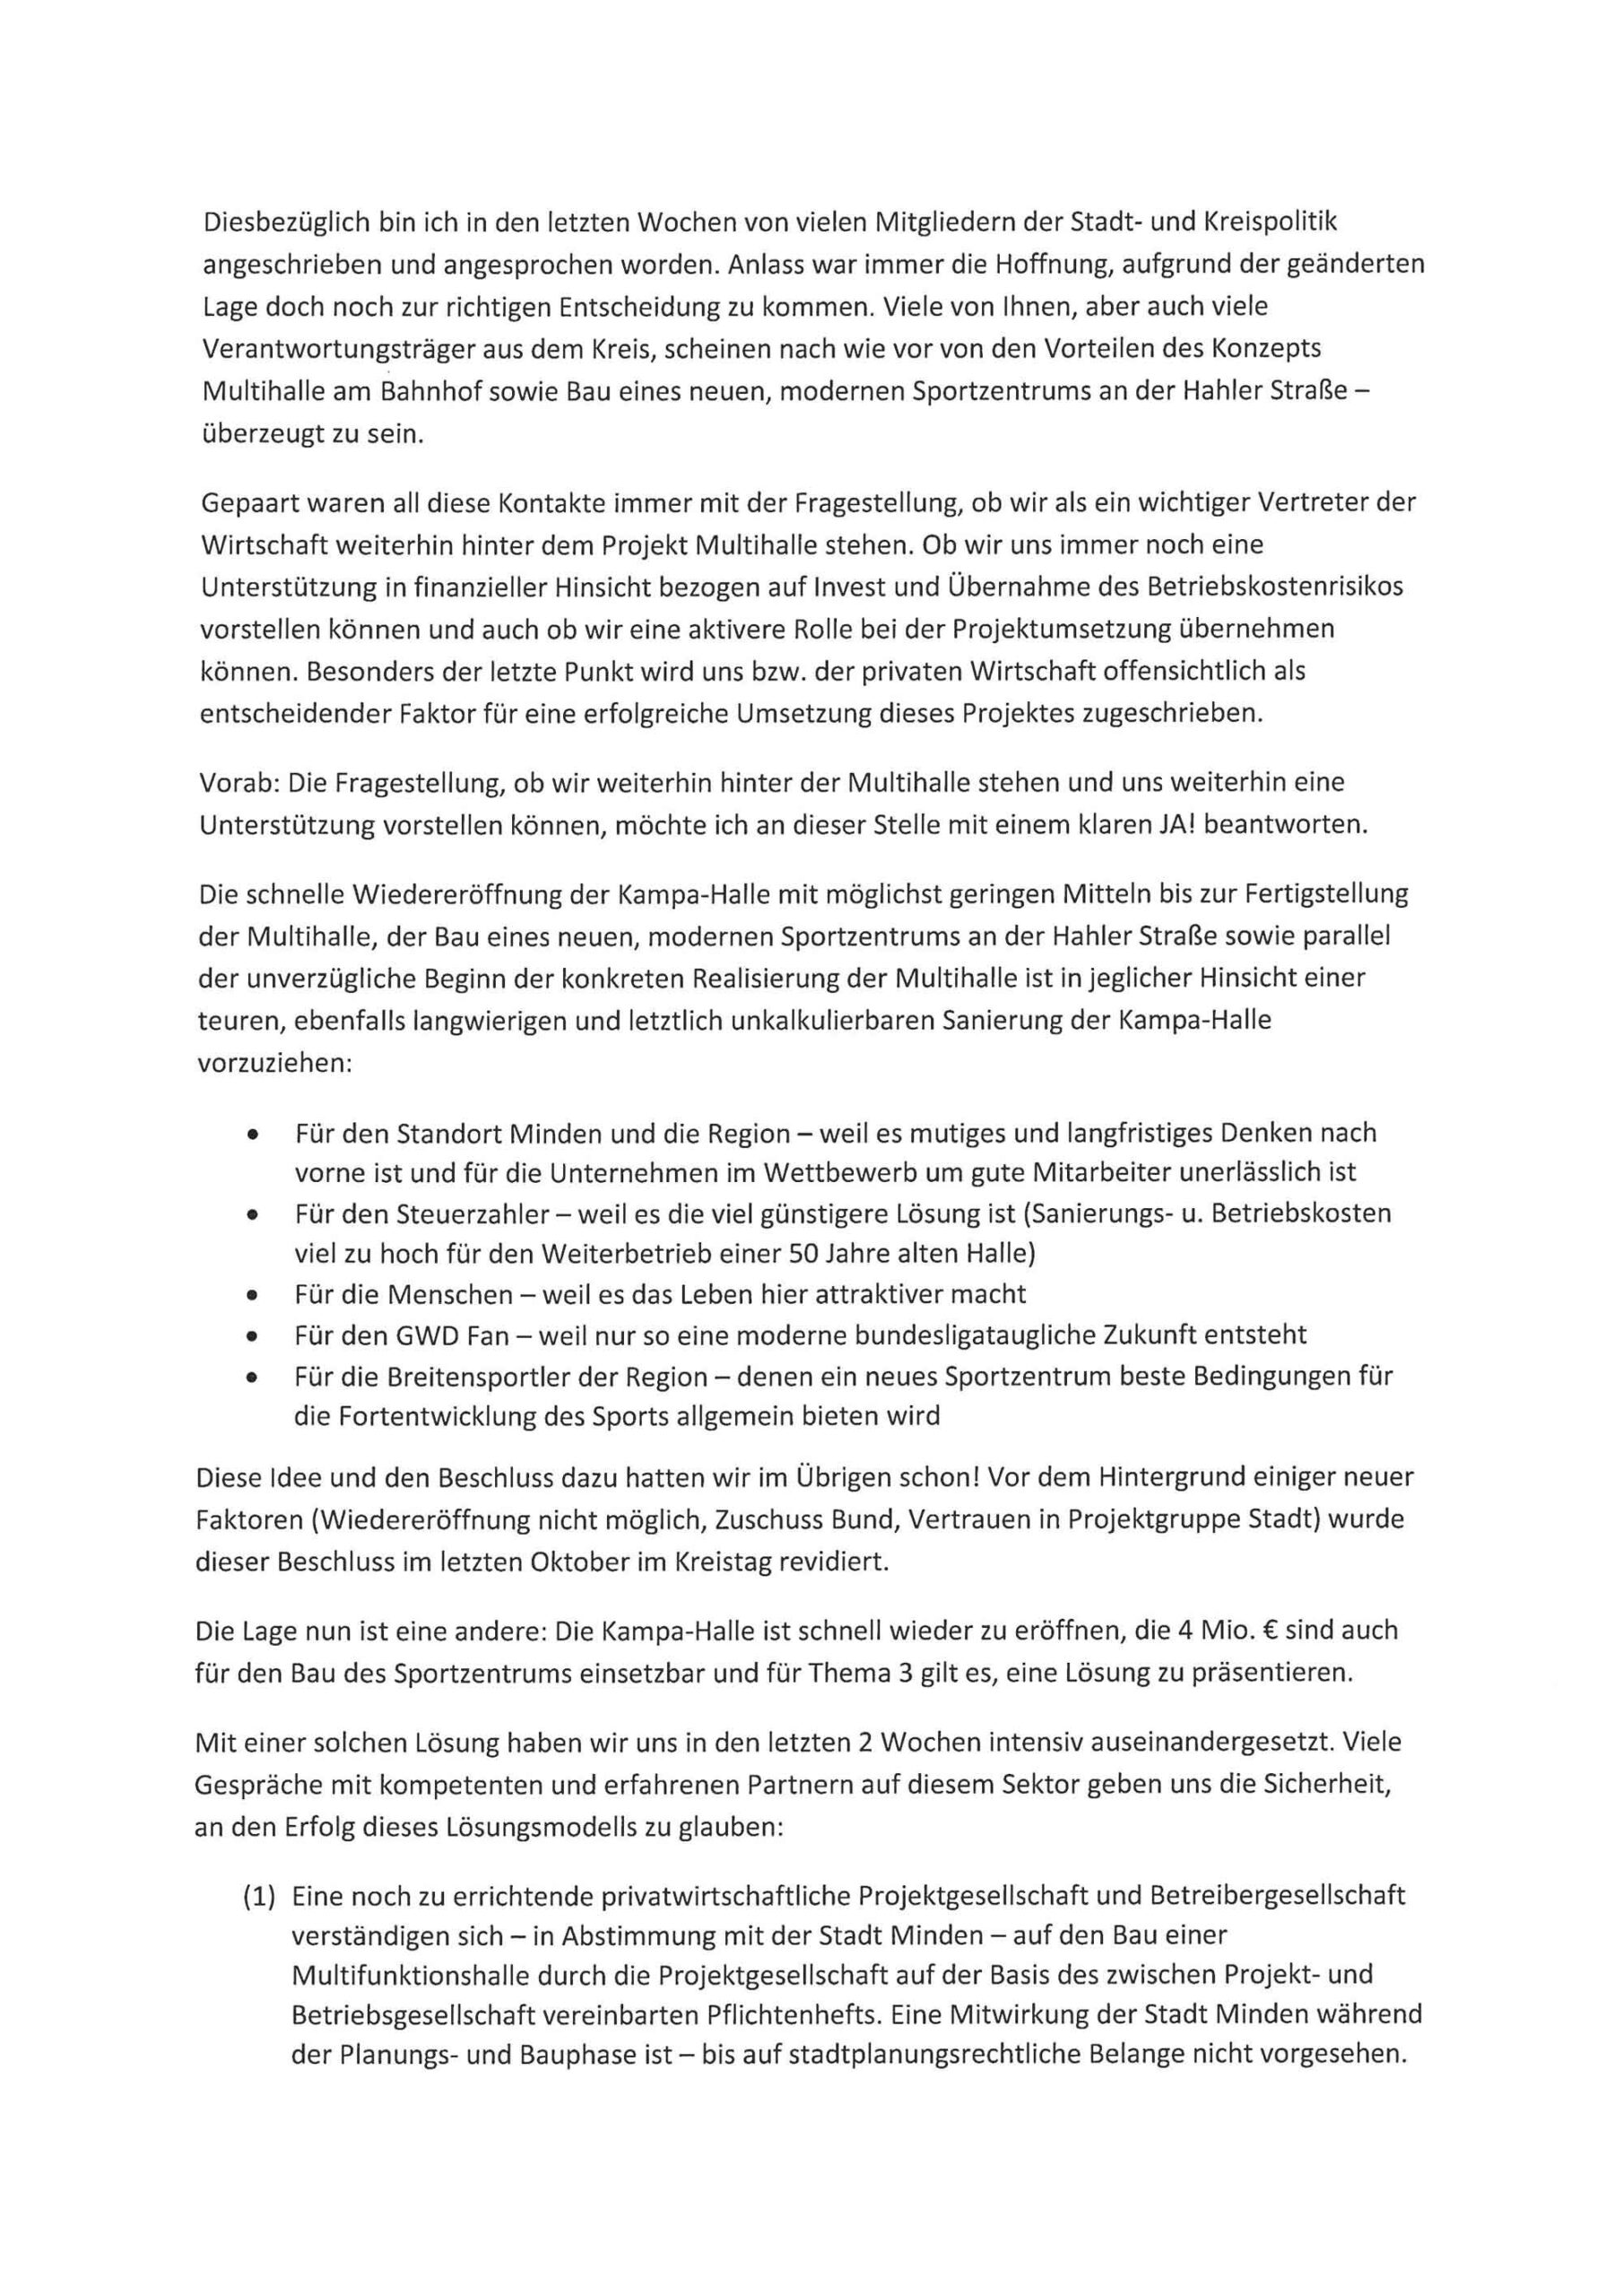 Seite 2 des Briefs von Jero Bentz an Bürgermeister und Rat Minden